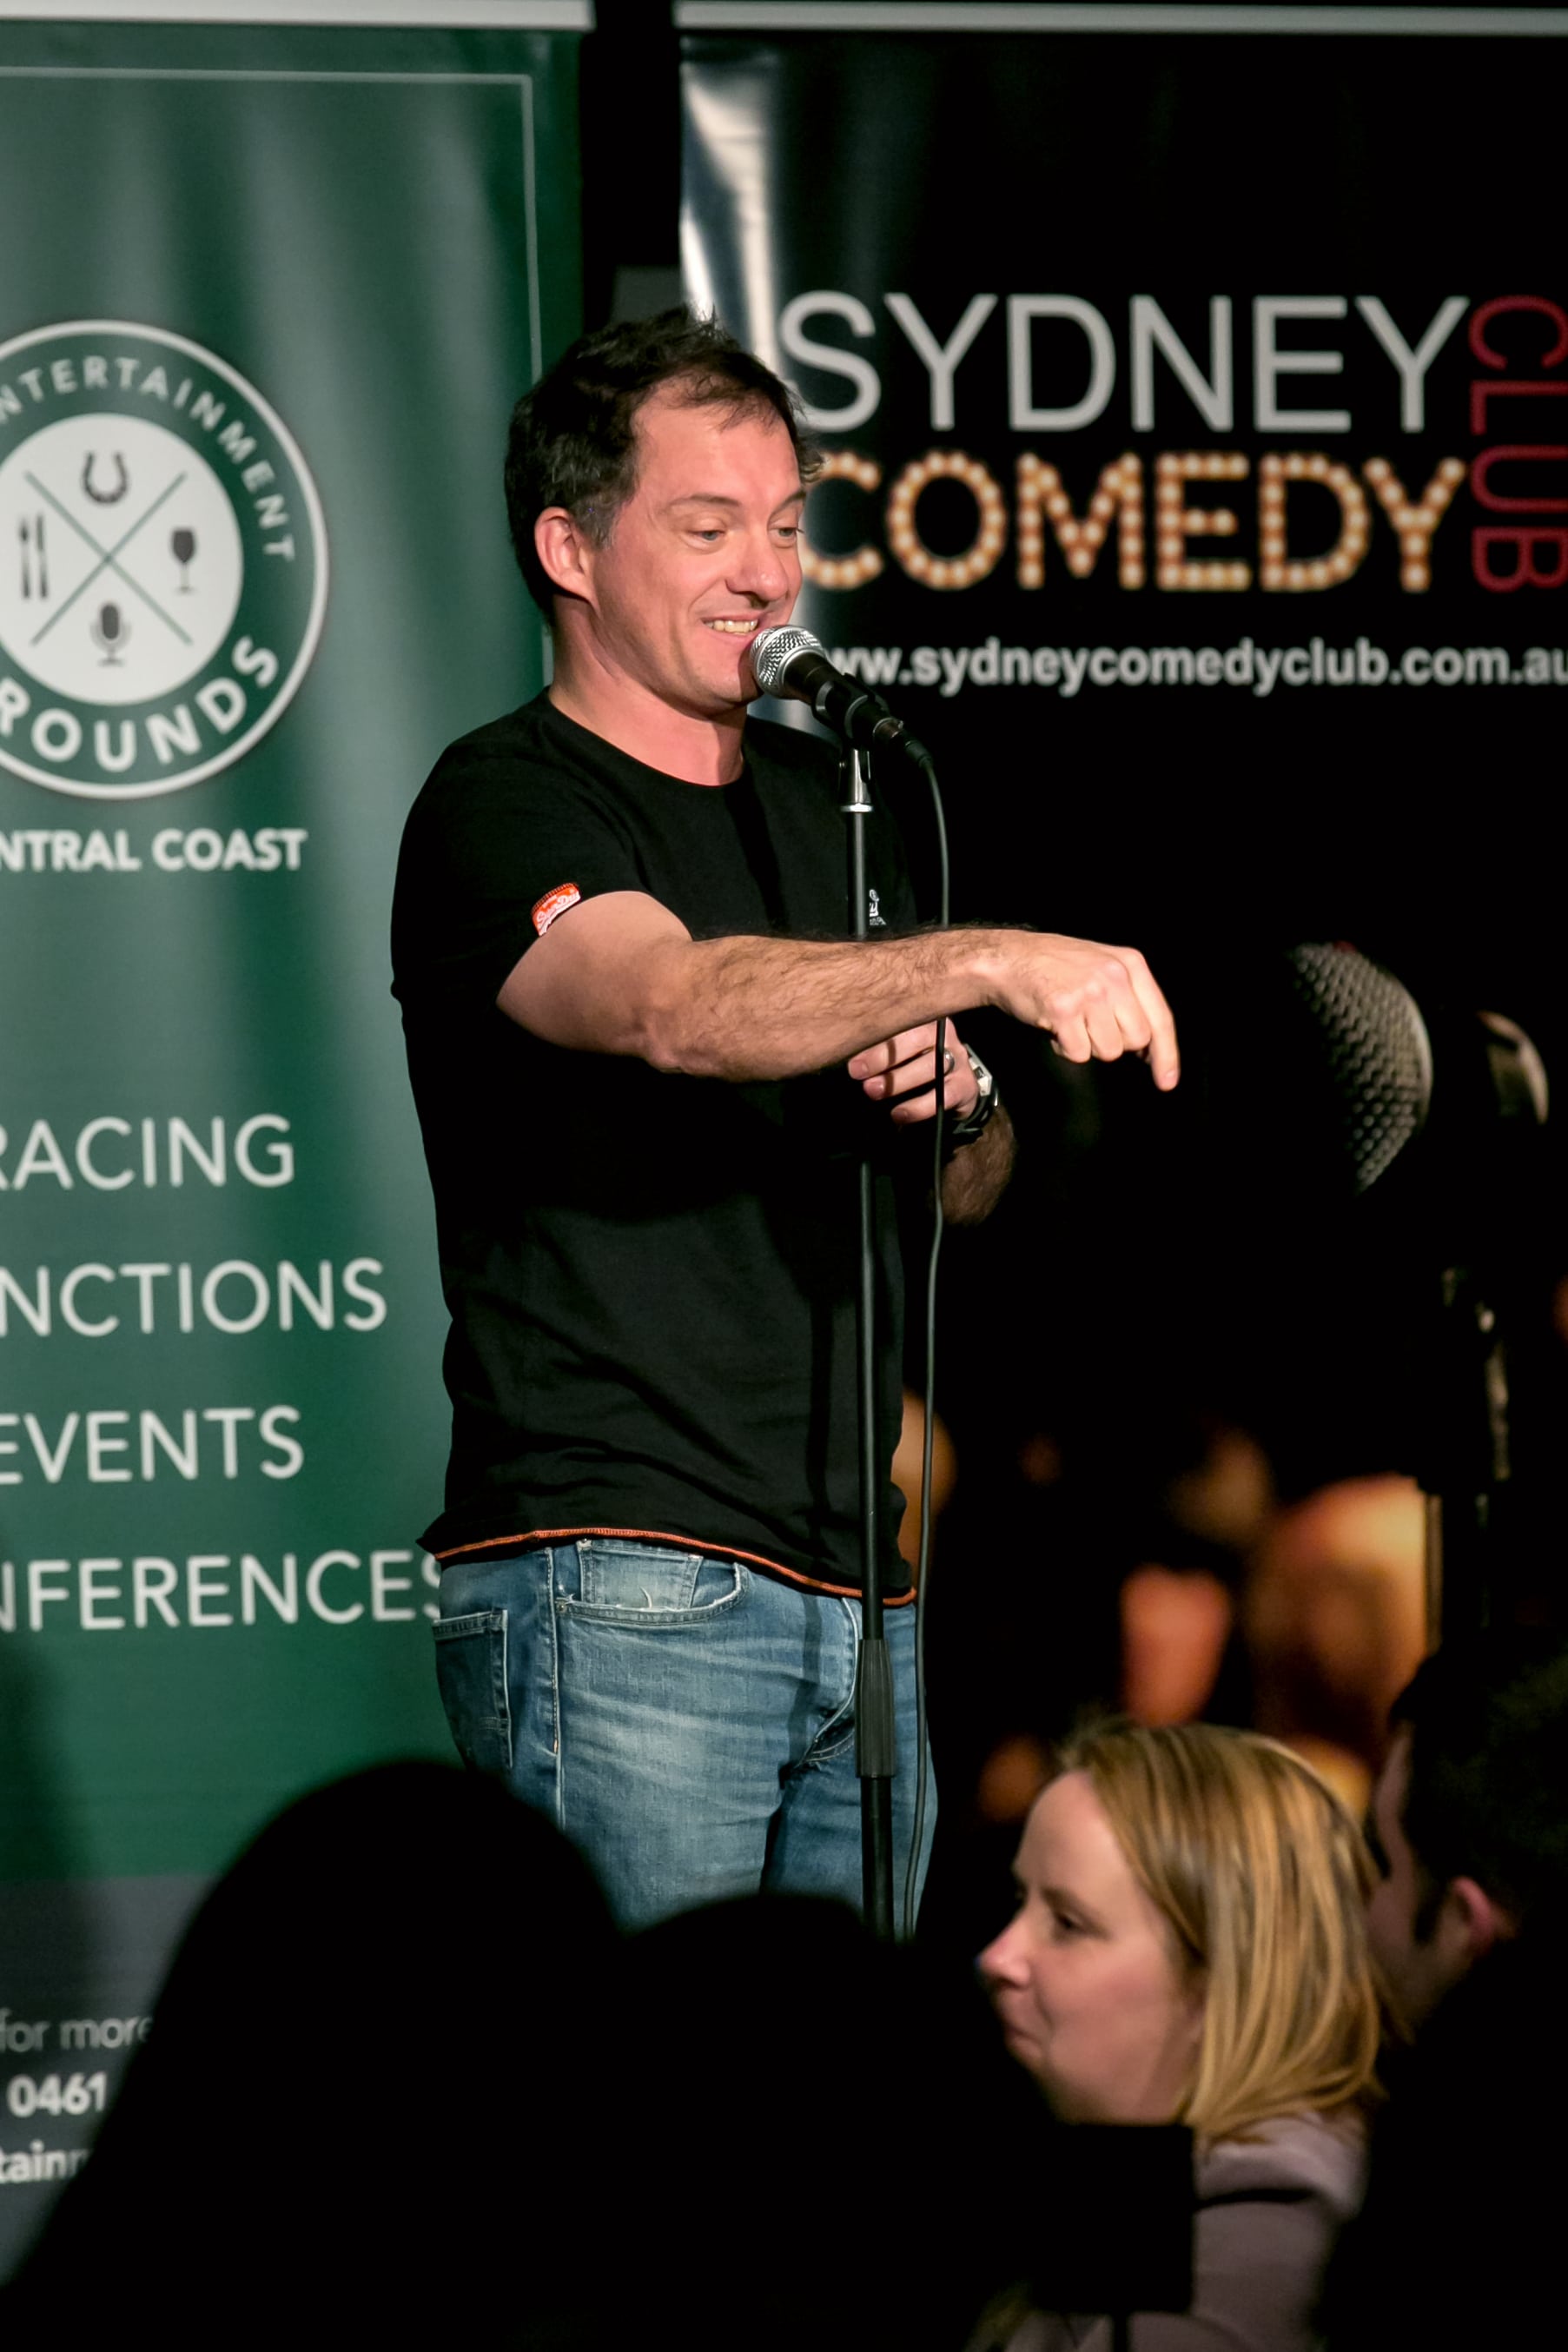 Sydney Comedy Club at The EG